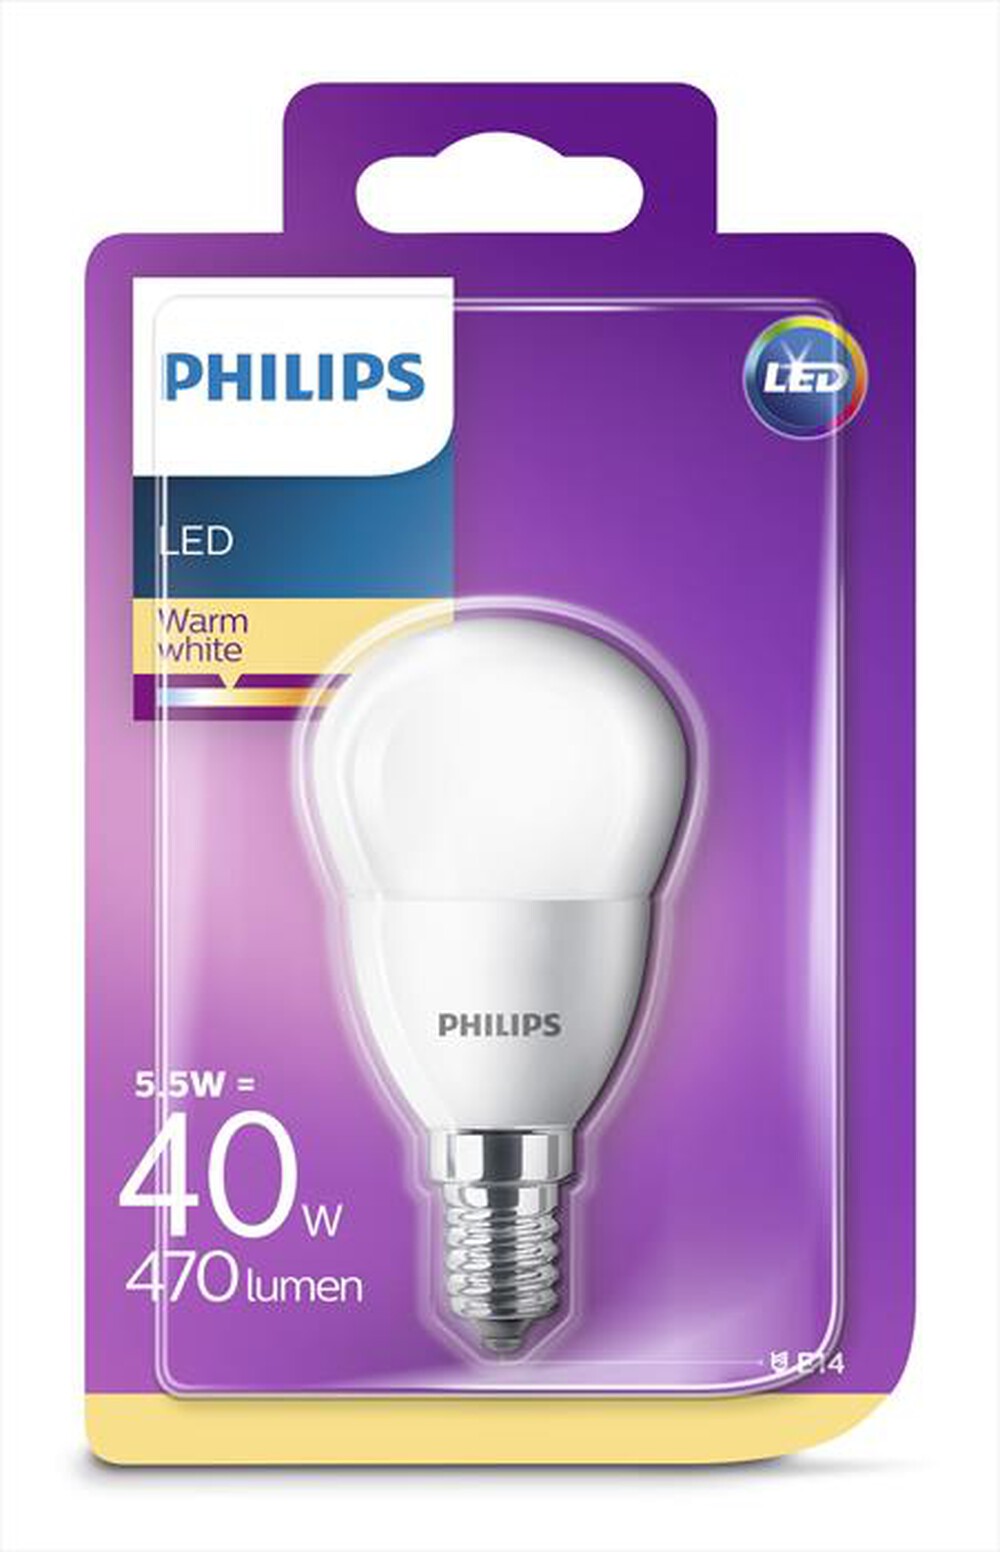 "PHILIPS - LEDSF40SME14 5,5W E14-Luce bianca calda"